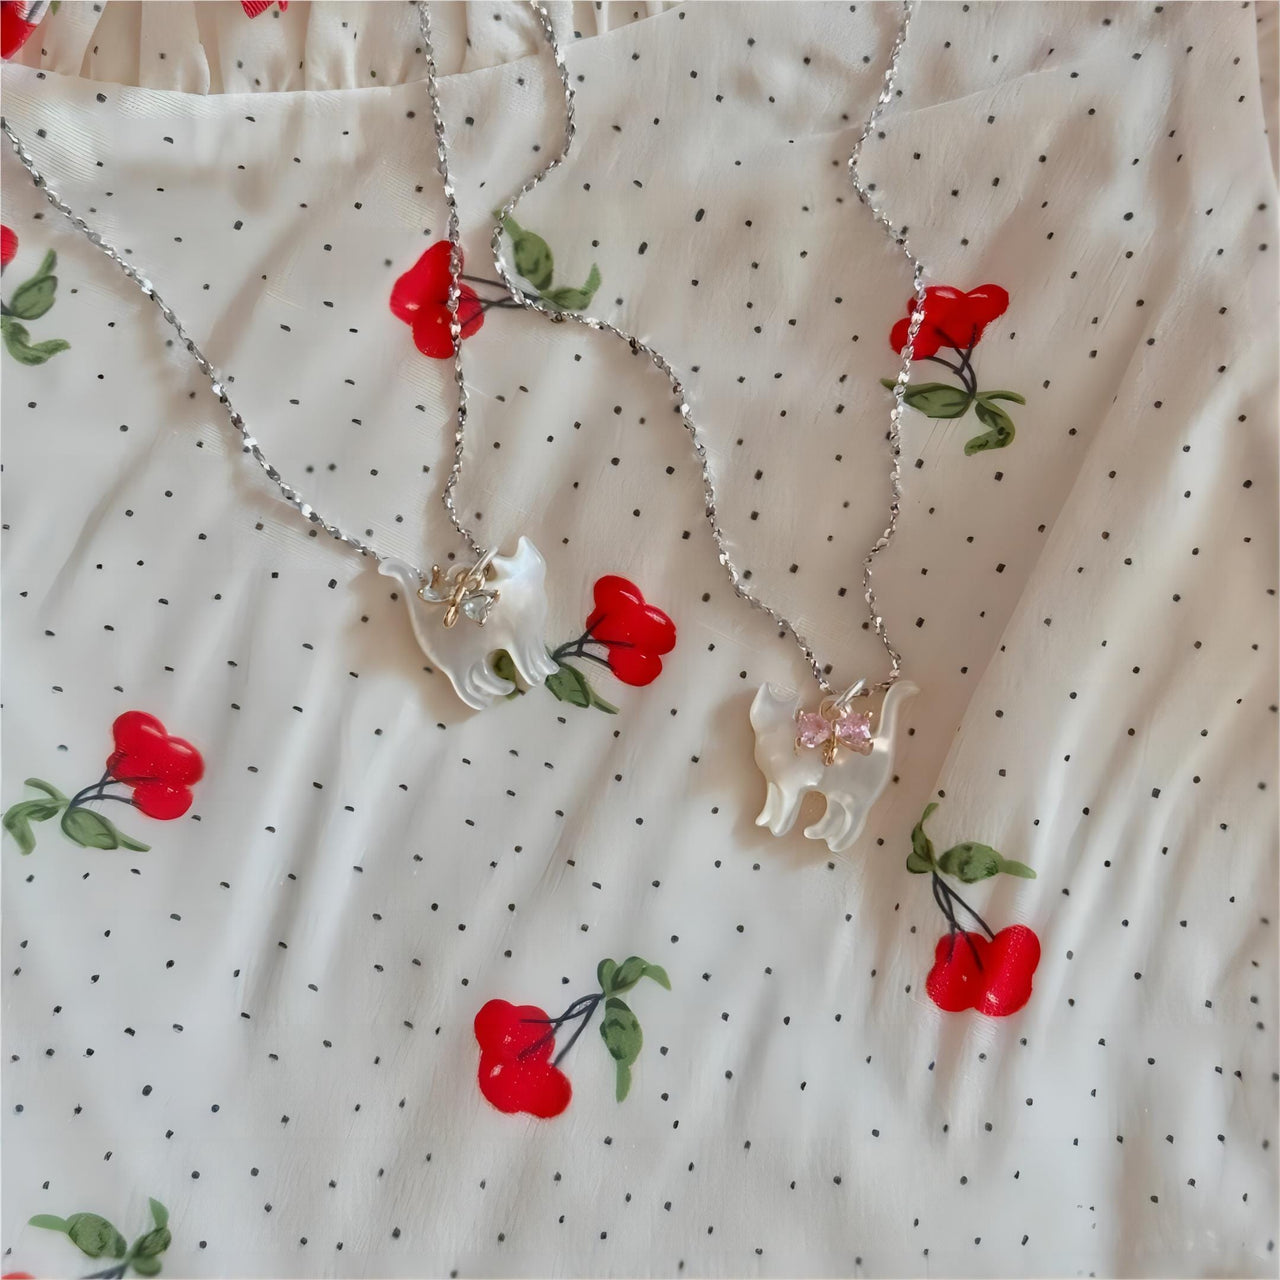 Crystal Bowknot Cat Pendant Necklace - ArtGalleryZen